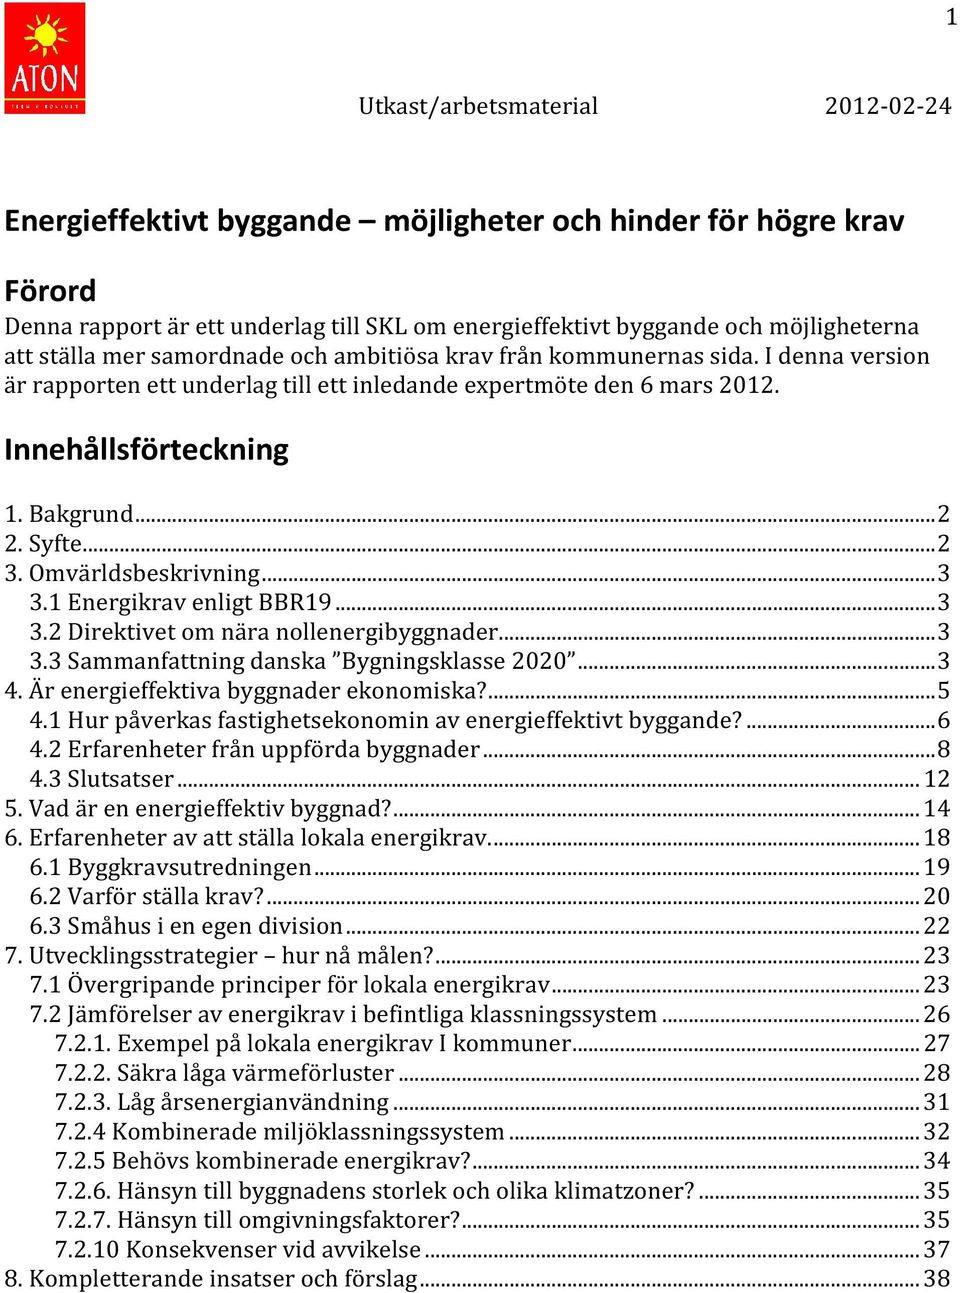 1 Energikrav enligt BBR19...3 3.2 Direktivet om nära nollenergibyggnader...3 3.3 Sammanfattning danska Bygningsklasse 2020...3 4. Är energieffektiva byggnader ekonomiska?...5 4.